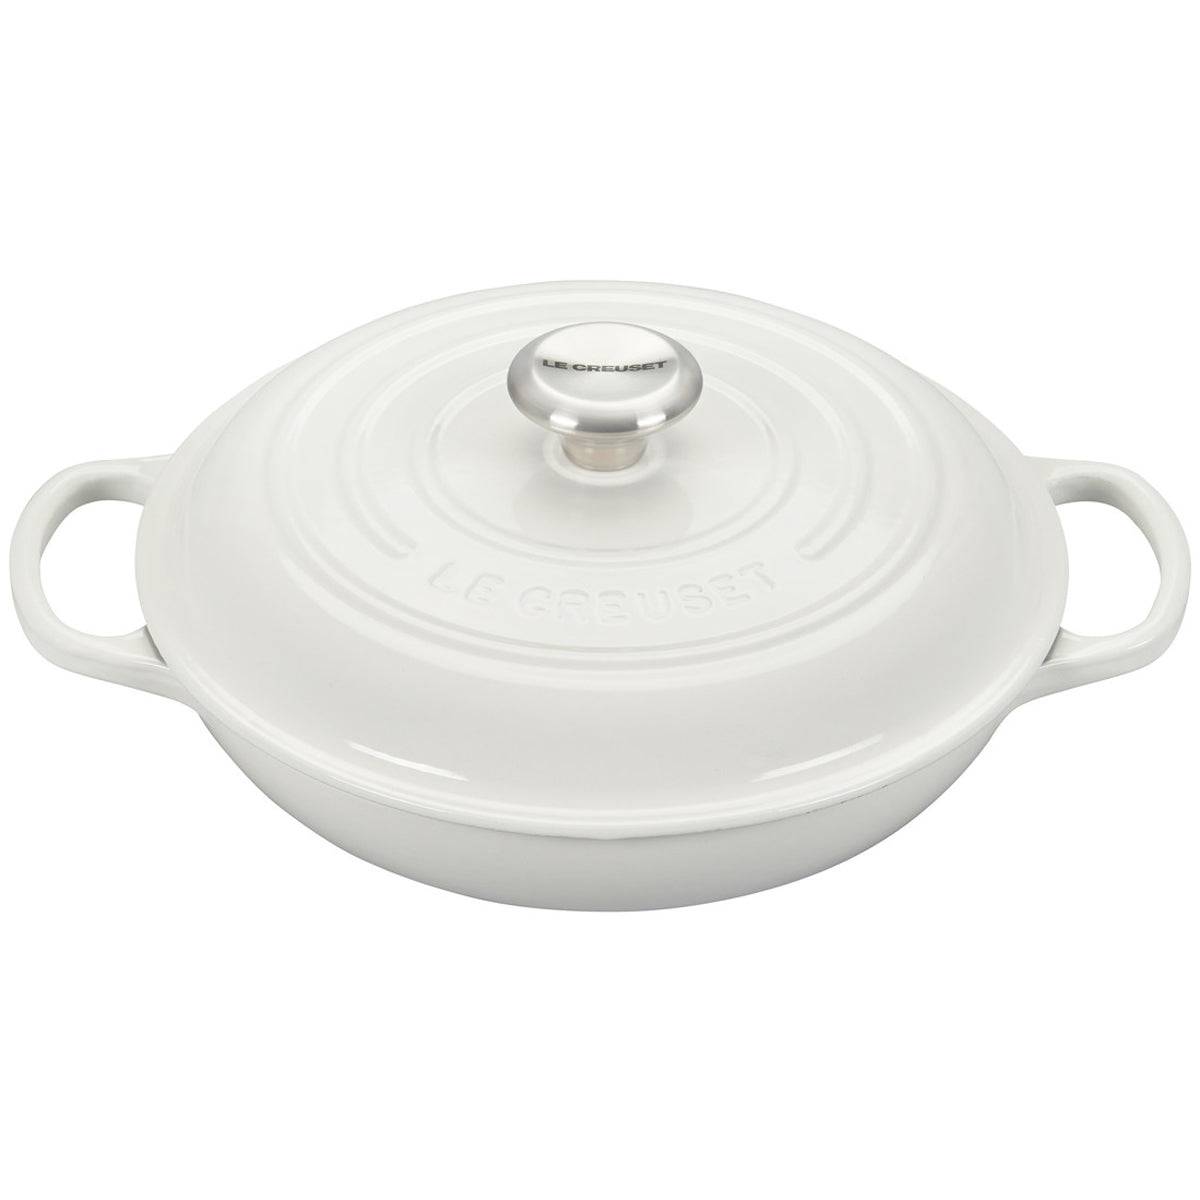  Le Creuset Signature Enameled Cast-Iron Cookware Set, 10-Piece,  White: Home & Kitchen